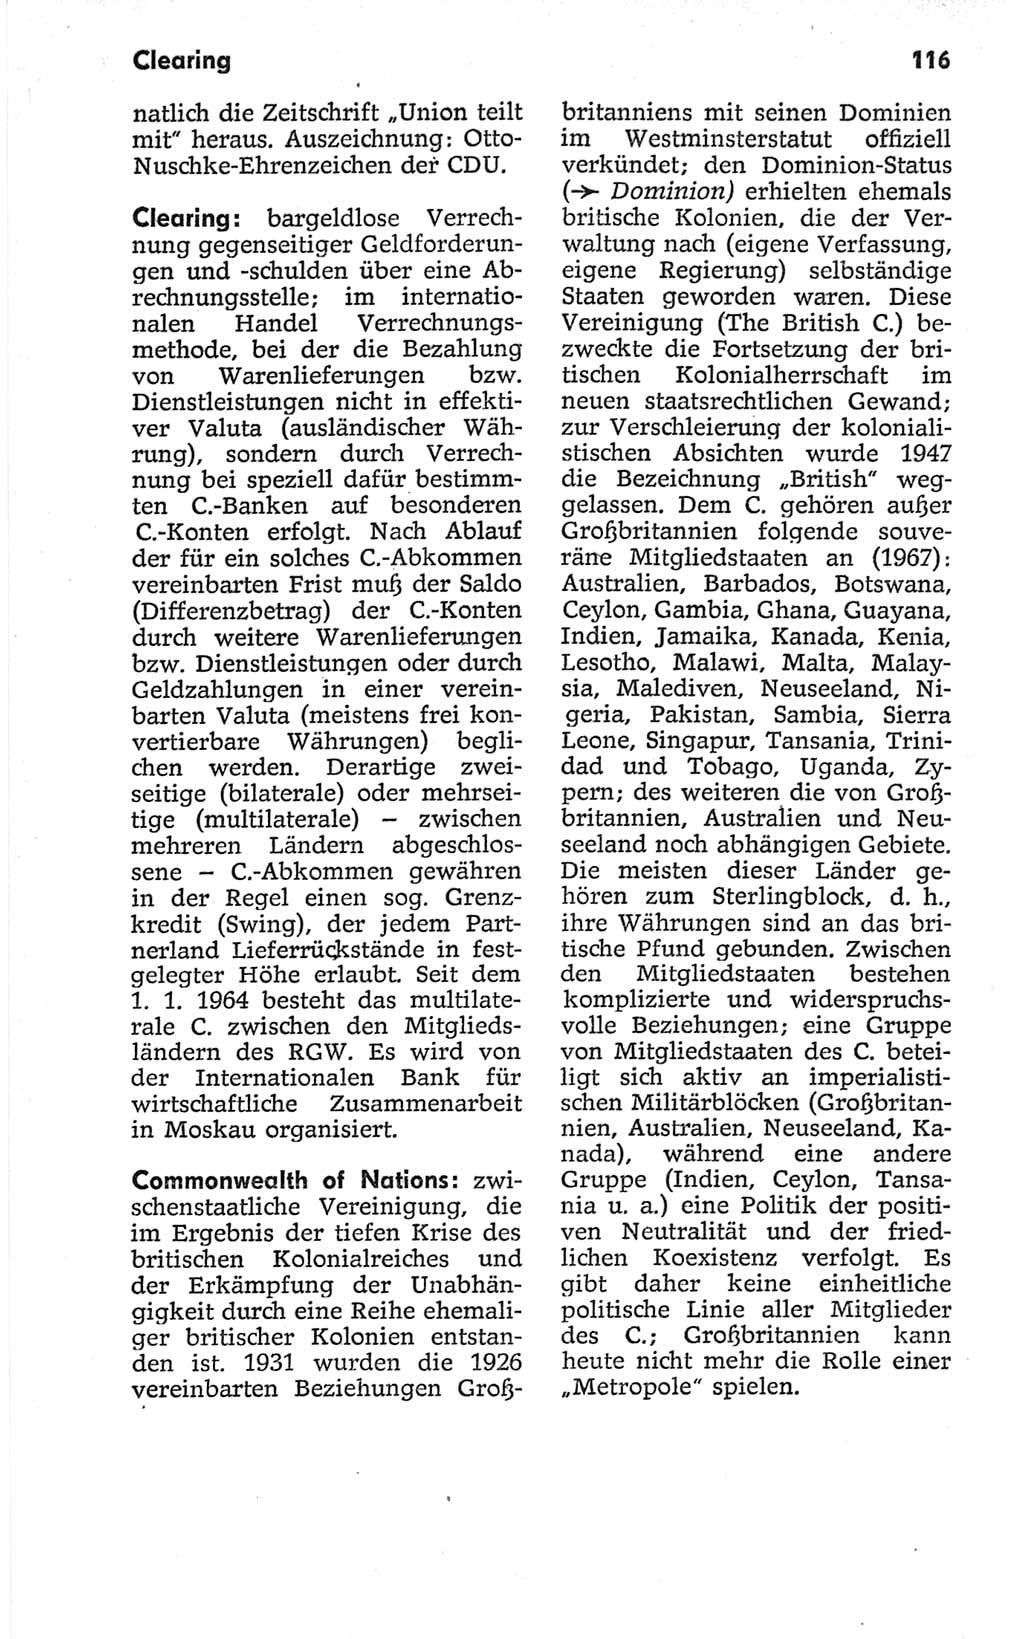 Kleines politisches Wörterbuch [Deutsche Demokratische Republik (DDR)] 1967, Seite 116 (Kl. pol. Wb. DDR 1967, S. 116)